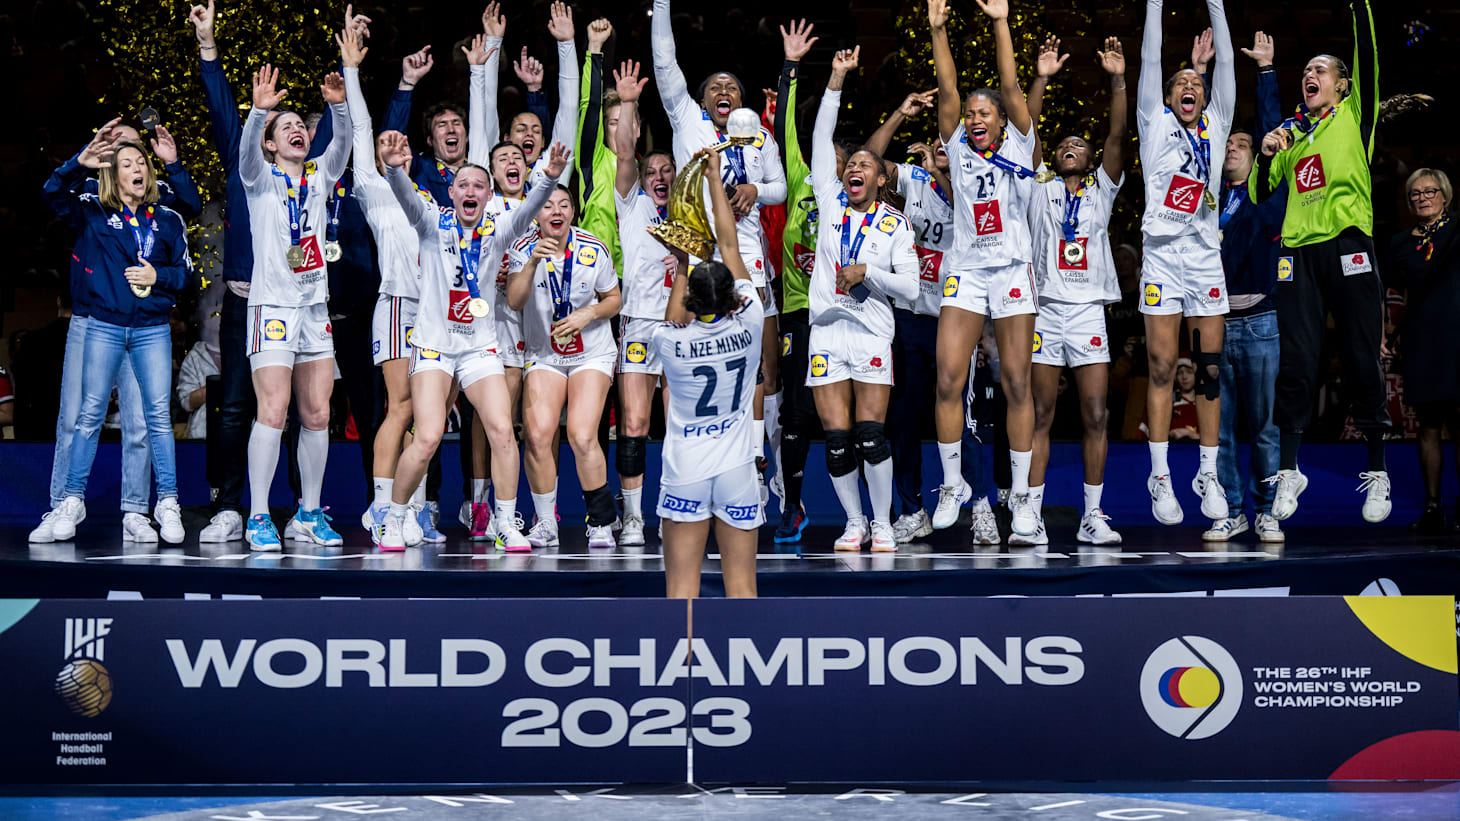 IHF Women's World Championship 2023